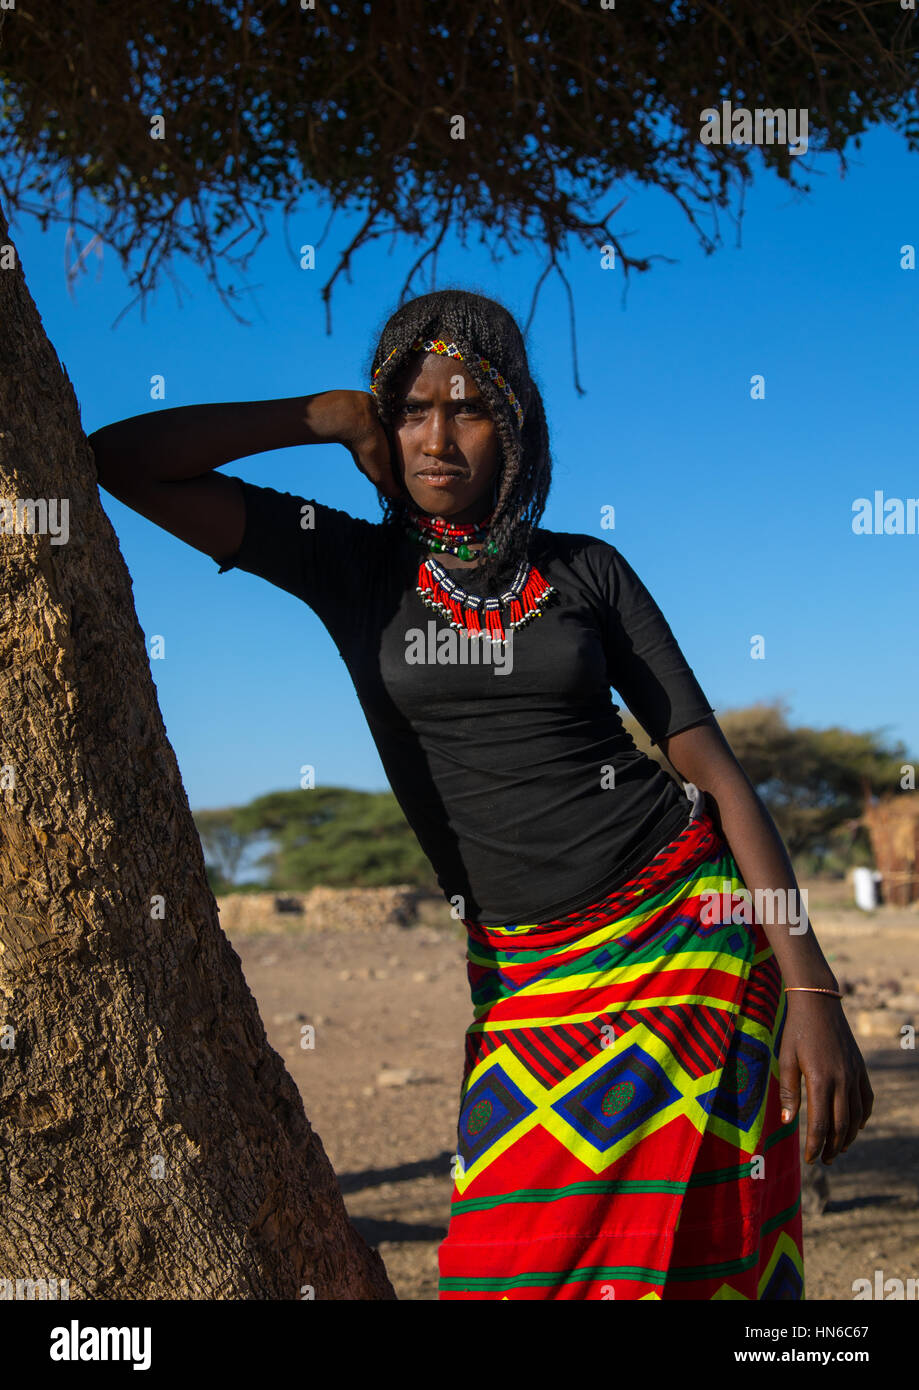 Ritratto di un etnia afar ragazza con i capelli intrecciati, regione di Afar, Chifra, Etiopia Foto Stock